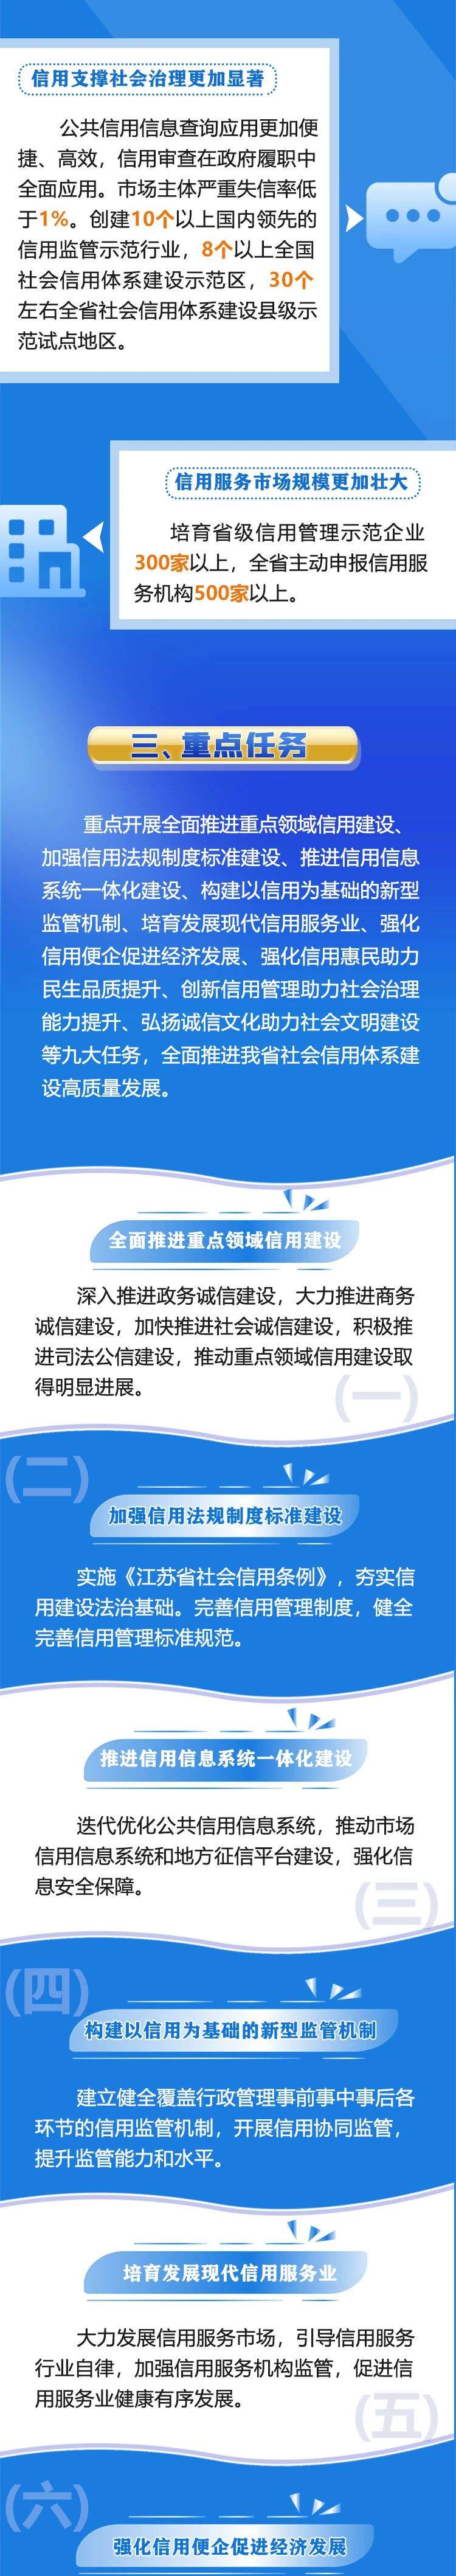 江苏省“十四五”社会信用体系建设规划 3.jpg